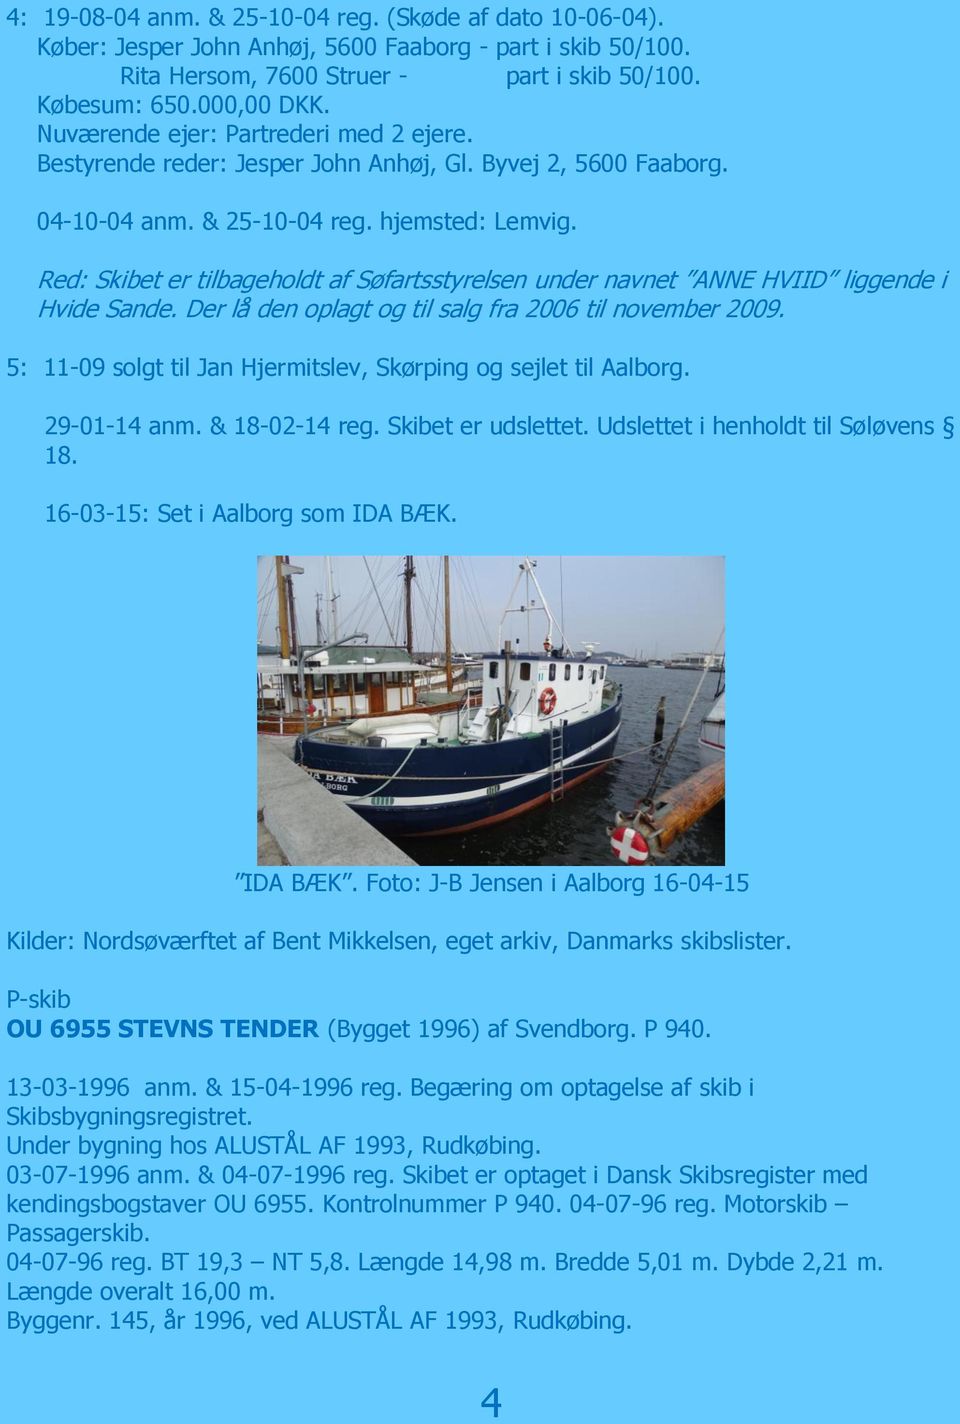 Red: Skibet er tilbageholdt af Søfartsstyrelsen under navnet ANNE HVIID liggende i Hvide Sande. Der lå den oplagt og til salg fra 2006 til november 2009.